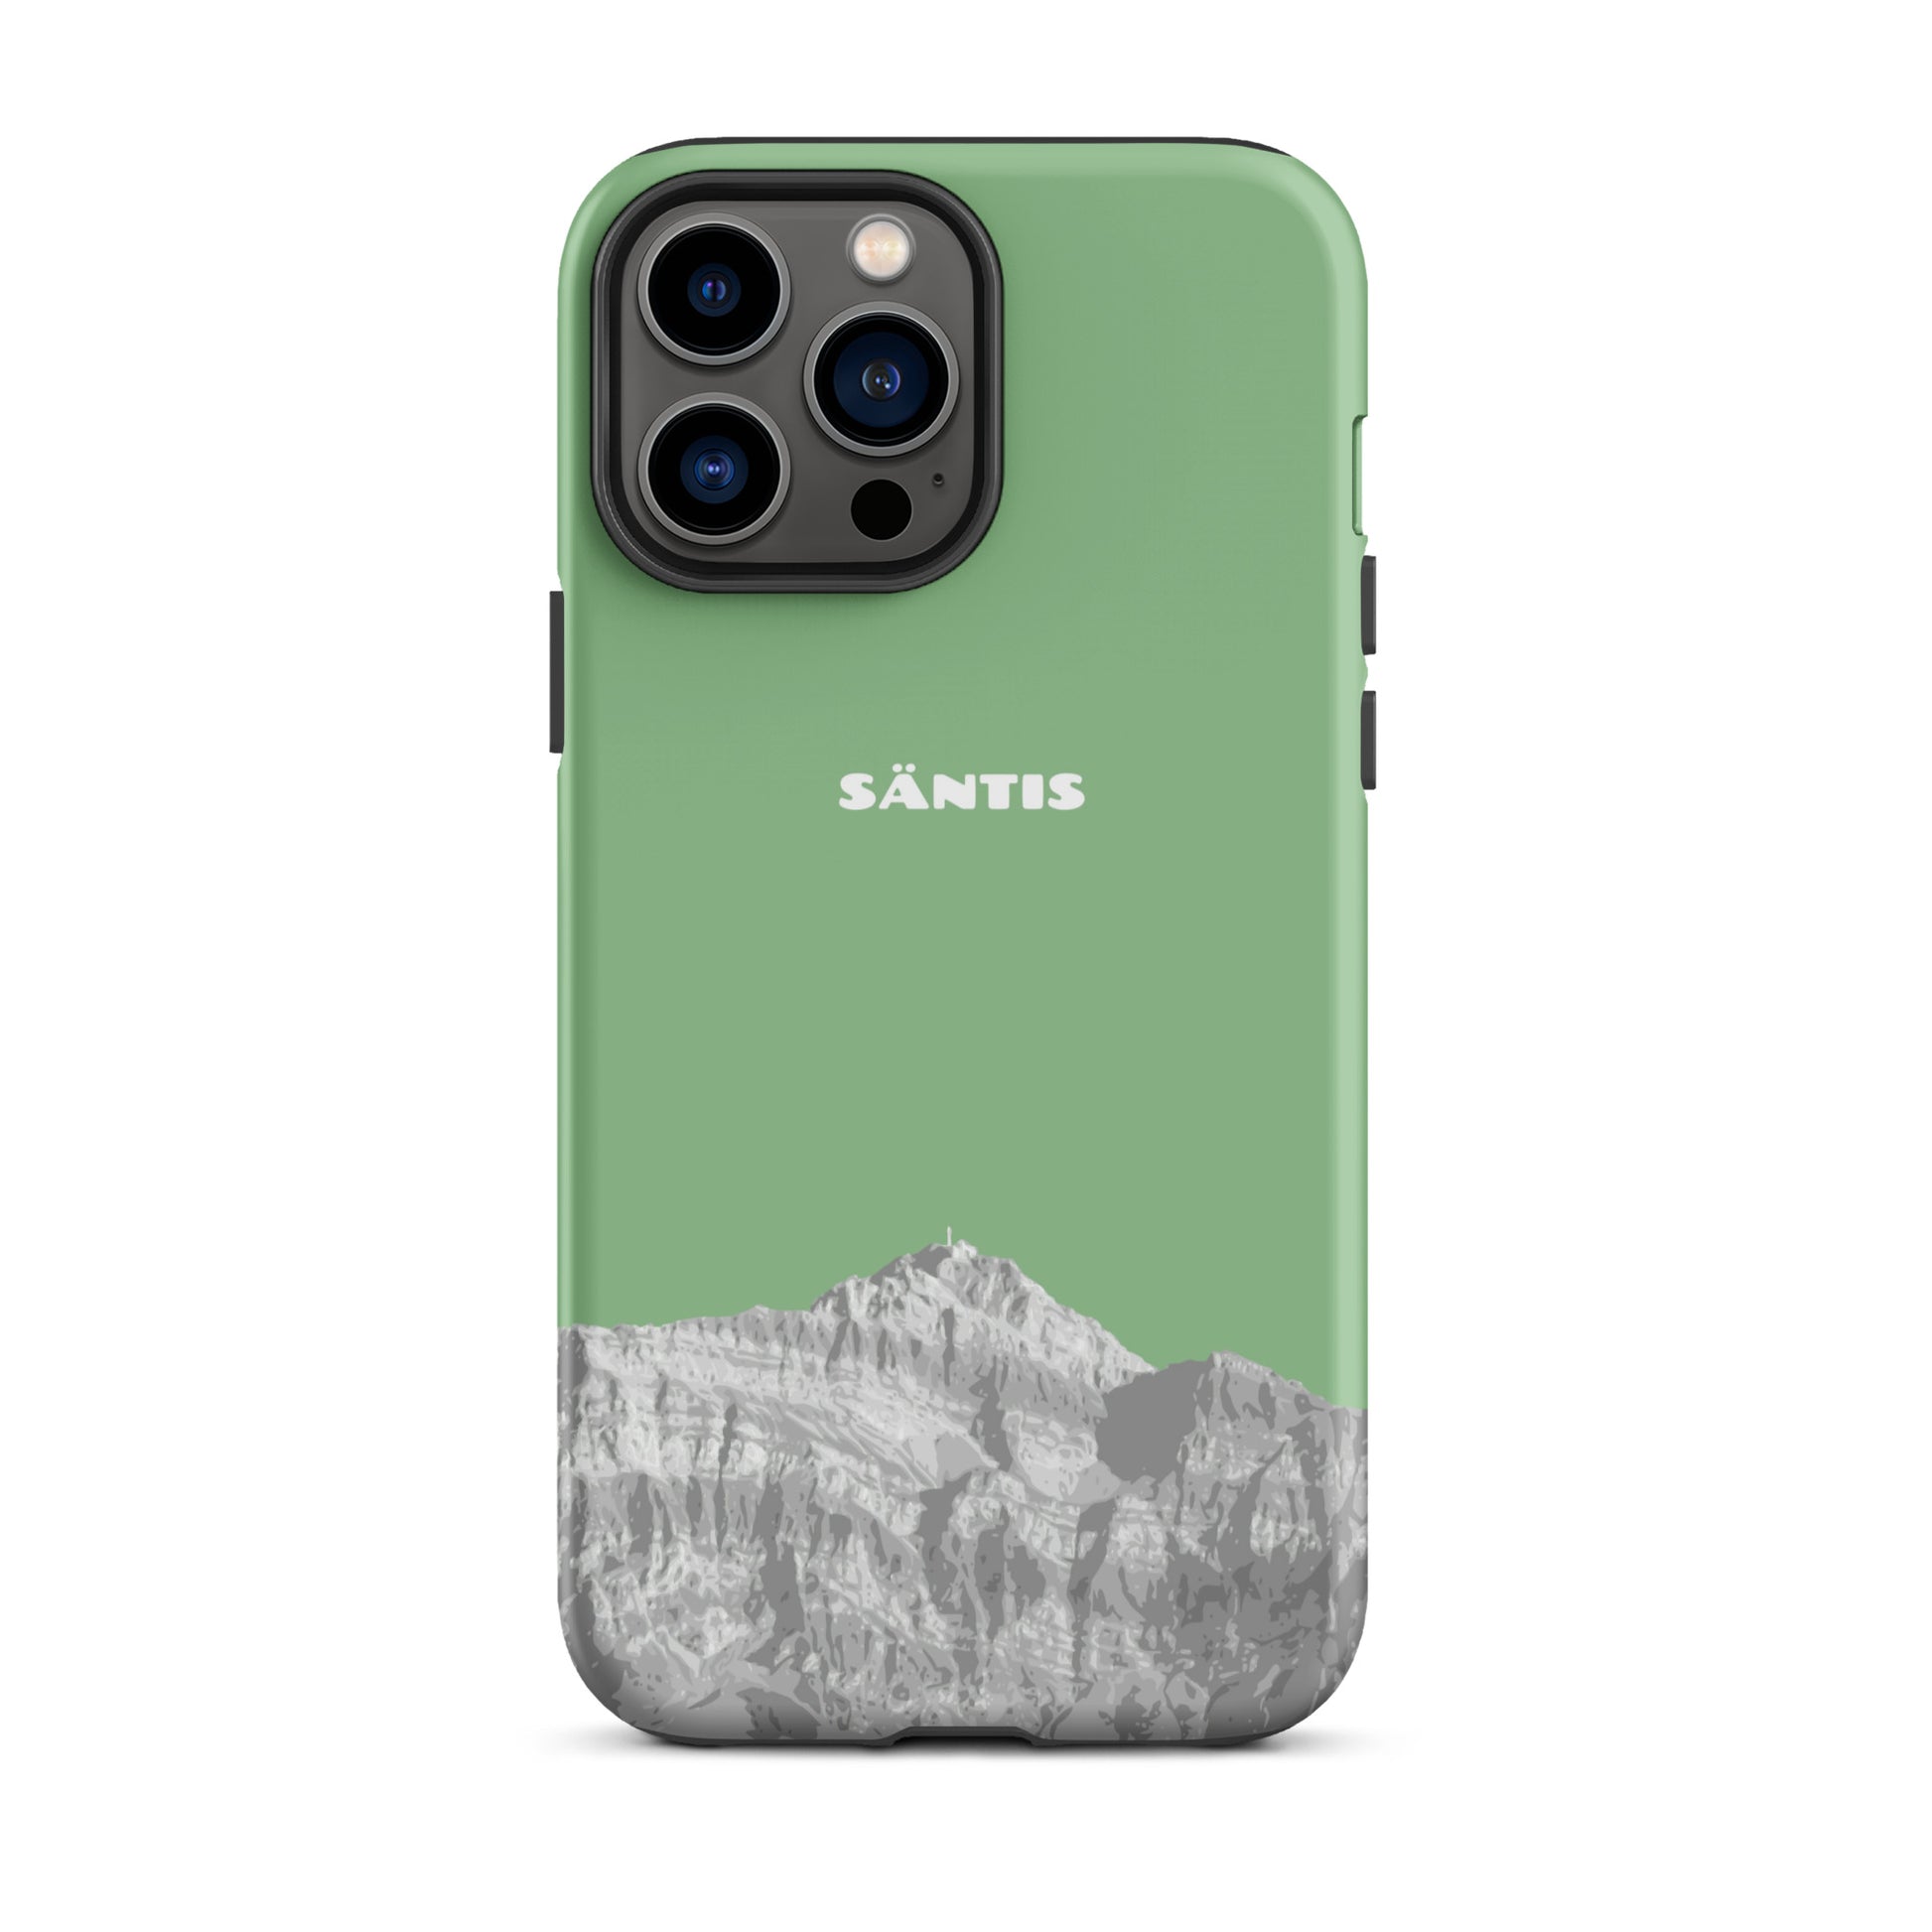 Hülle für das iPhone 13 Pro Max von Apple in der Farbe Hellgrün, dass den Säntis im Alpstein zeigt.